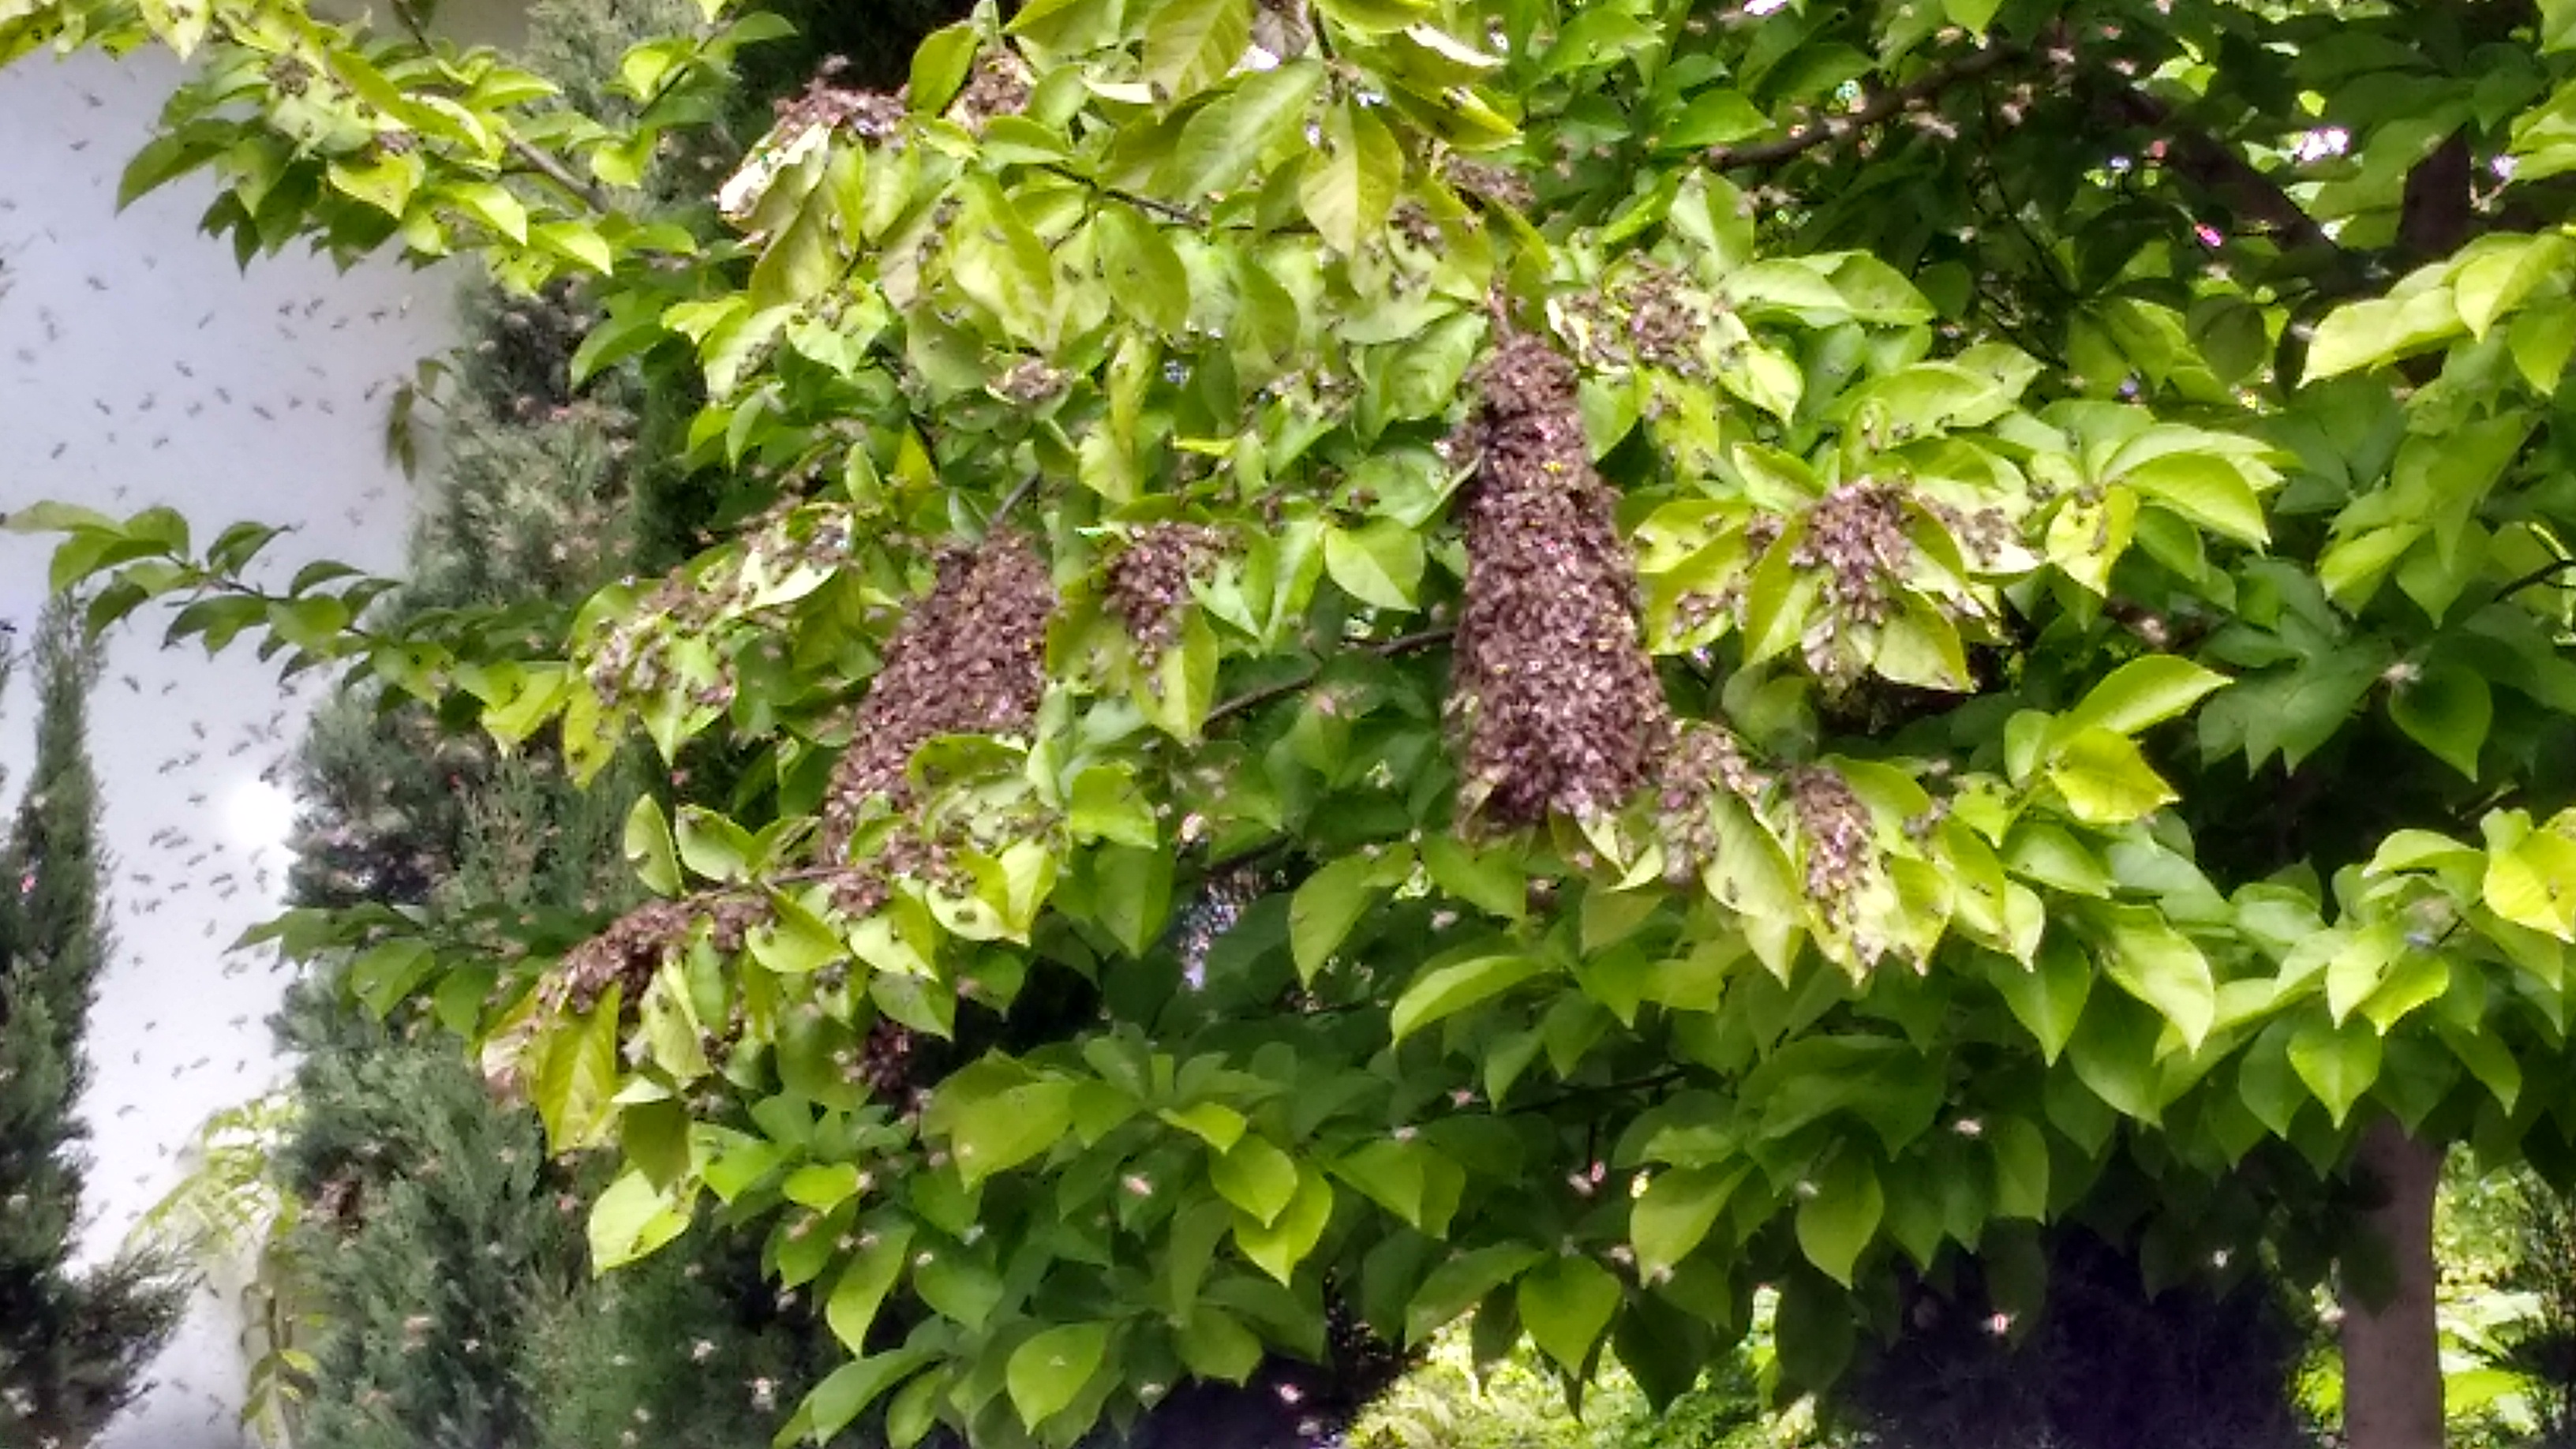 Bienenschwarm im Baum